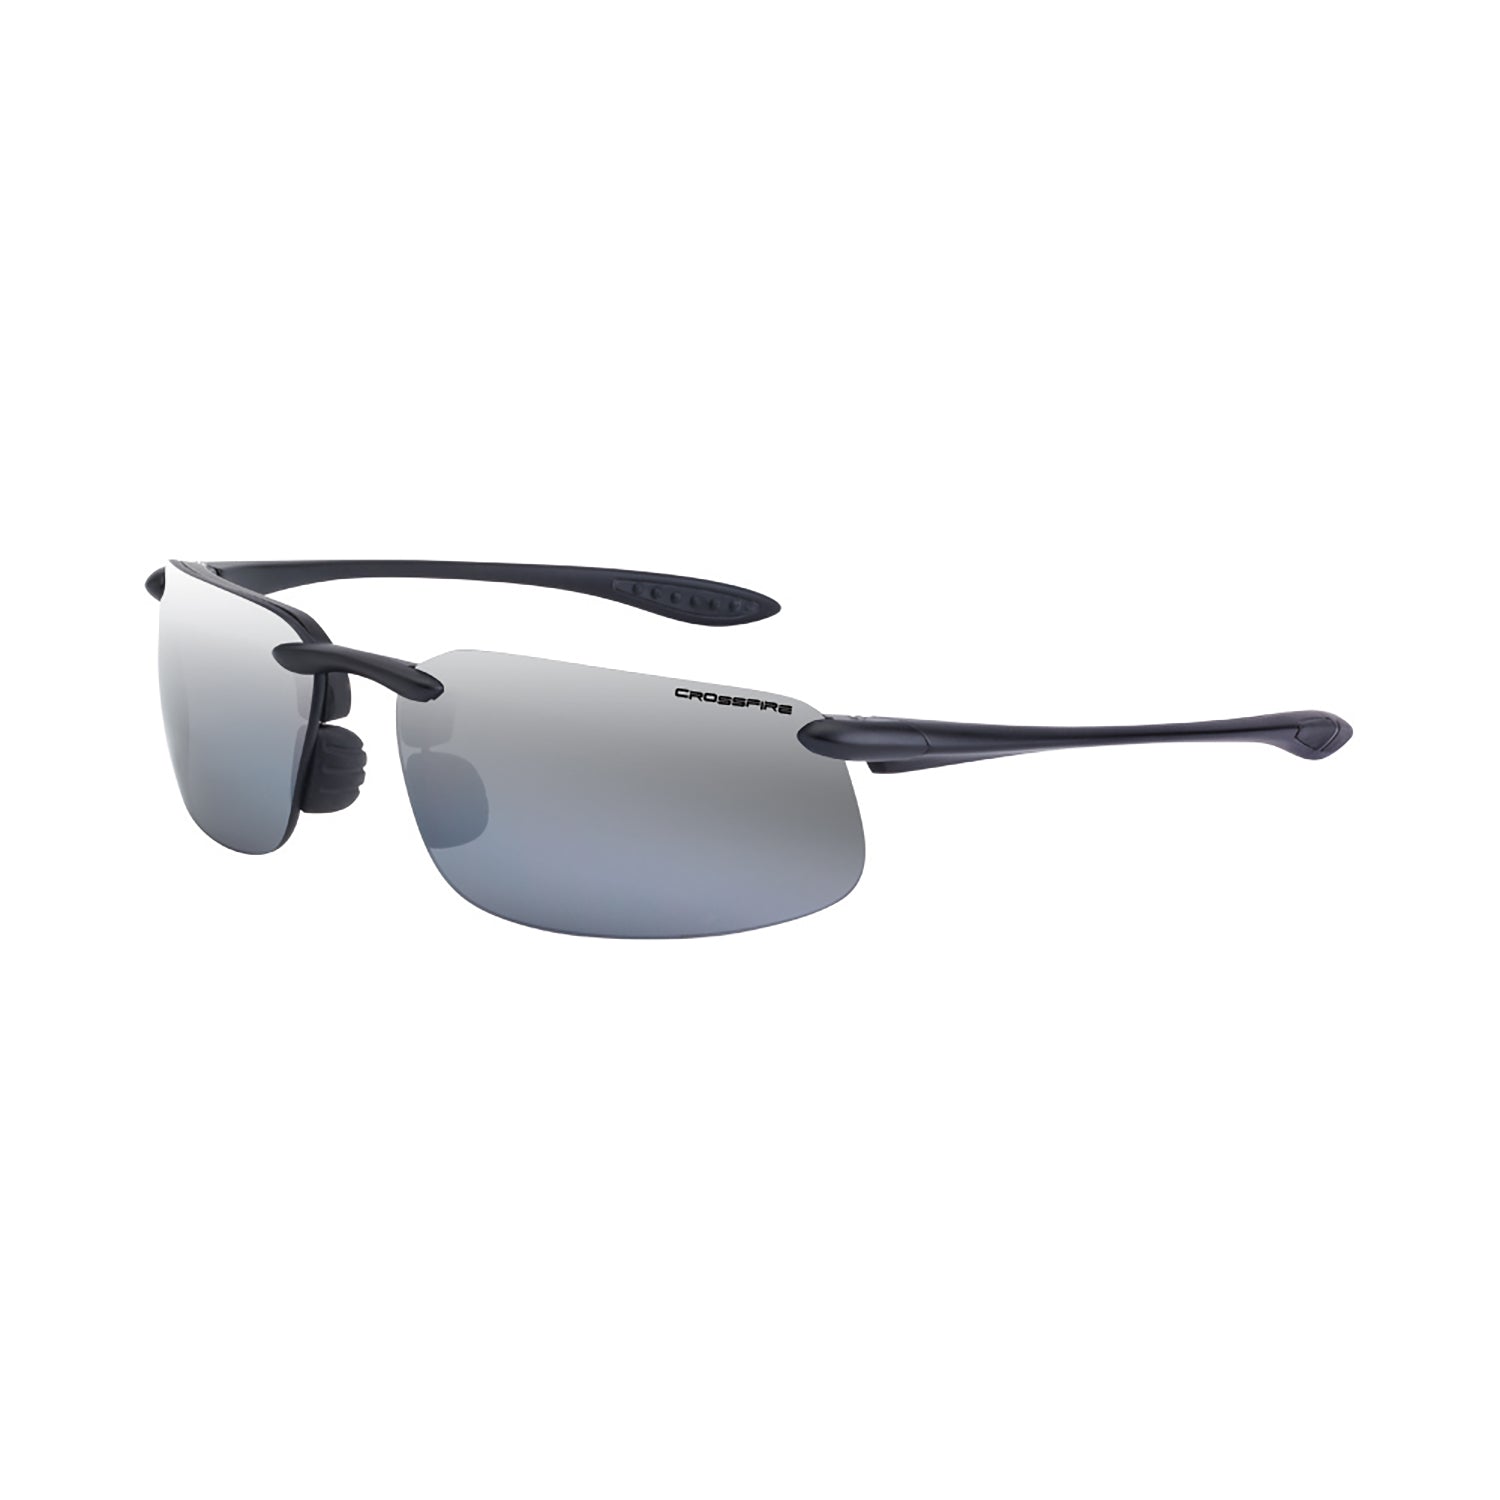 Crossfire ES4 Premium Safety Eyewear-eSafety Supplies, Inc